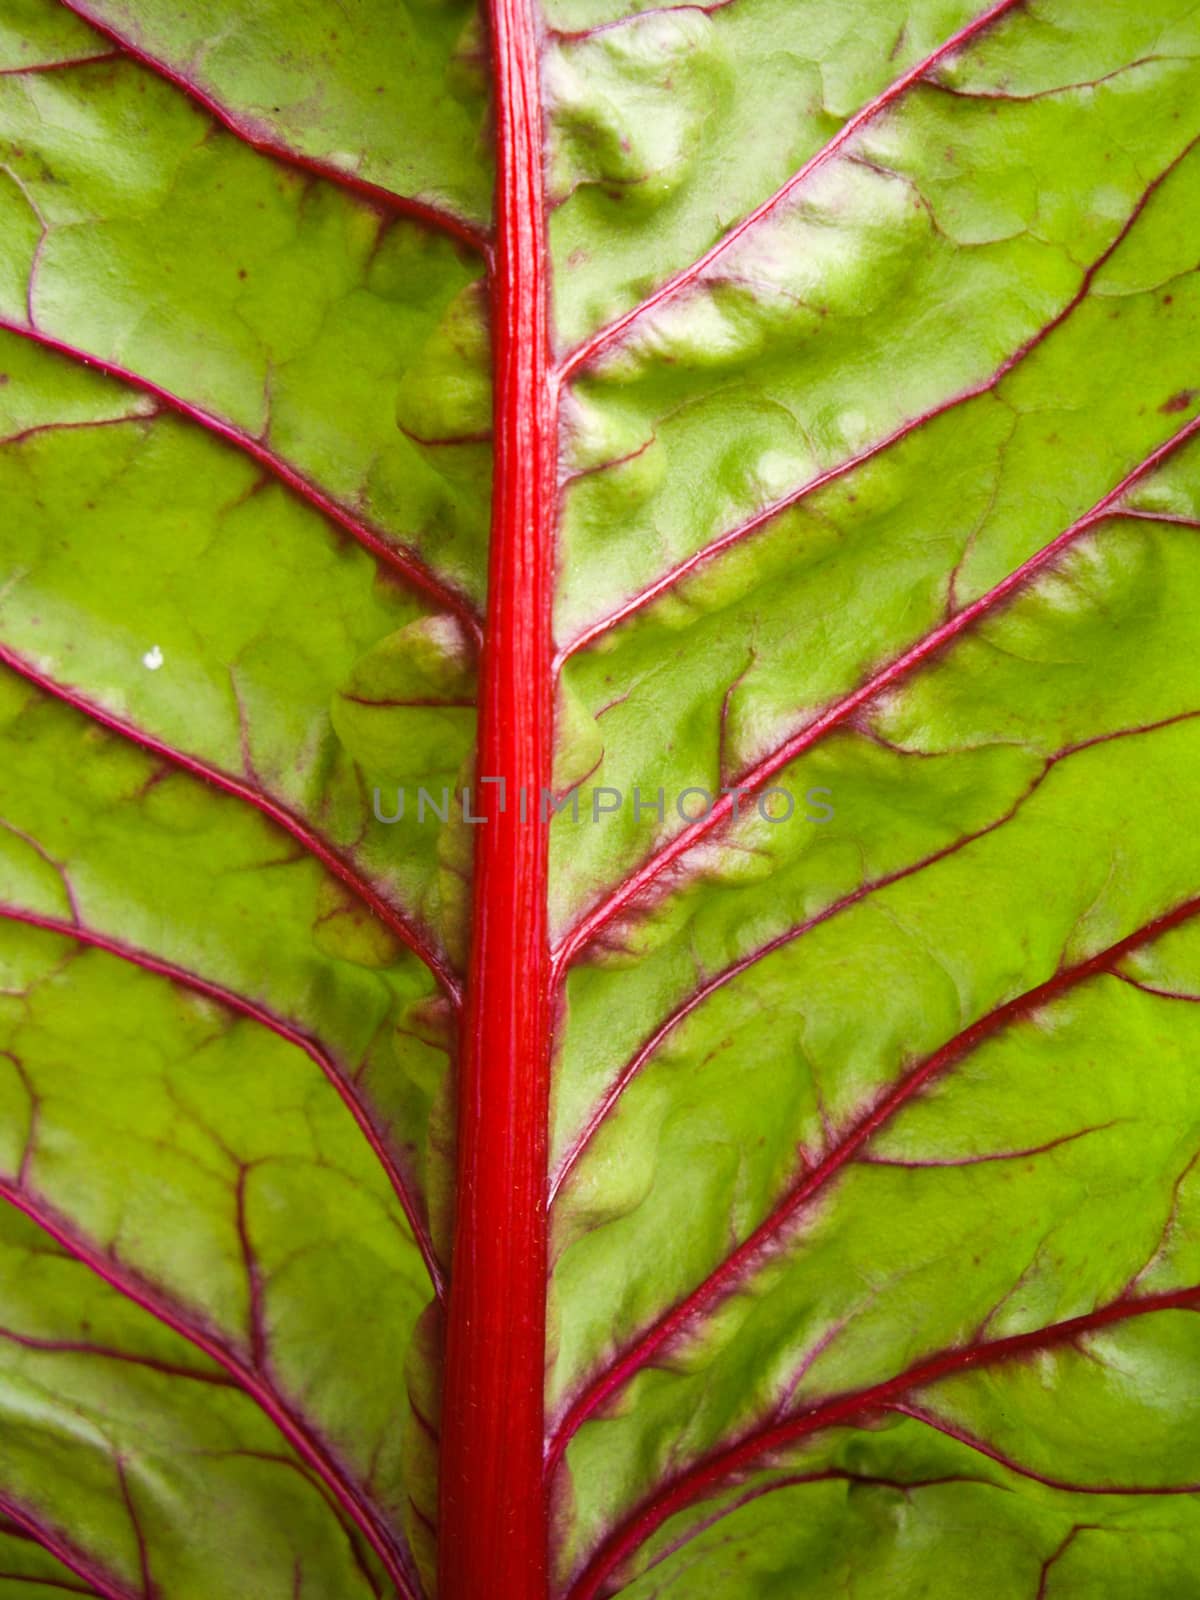 Red veined green leaf by emattil